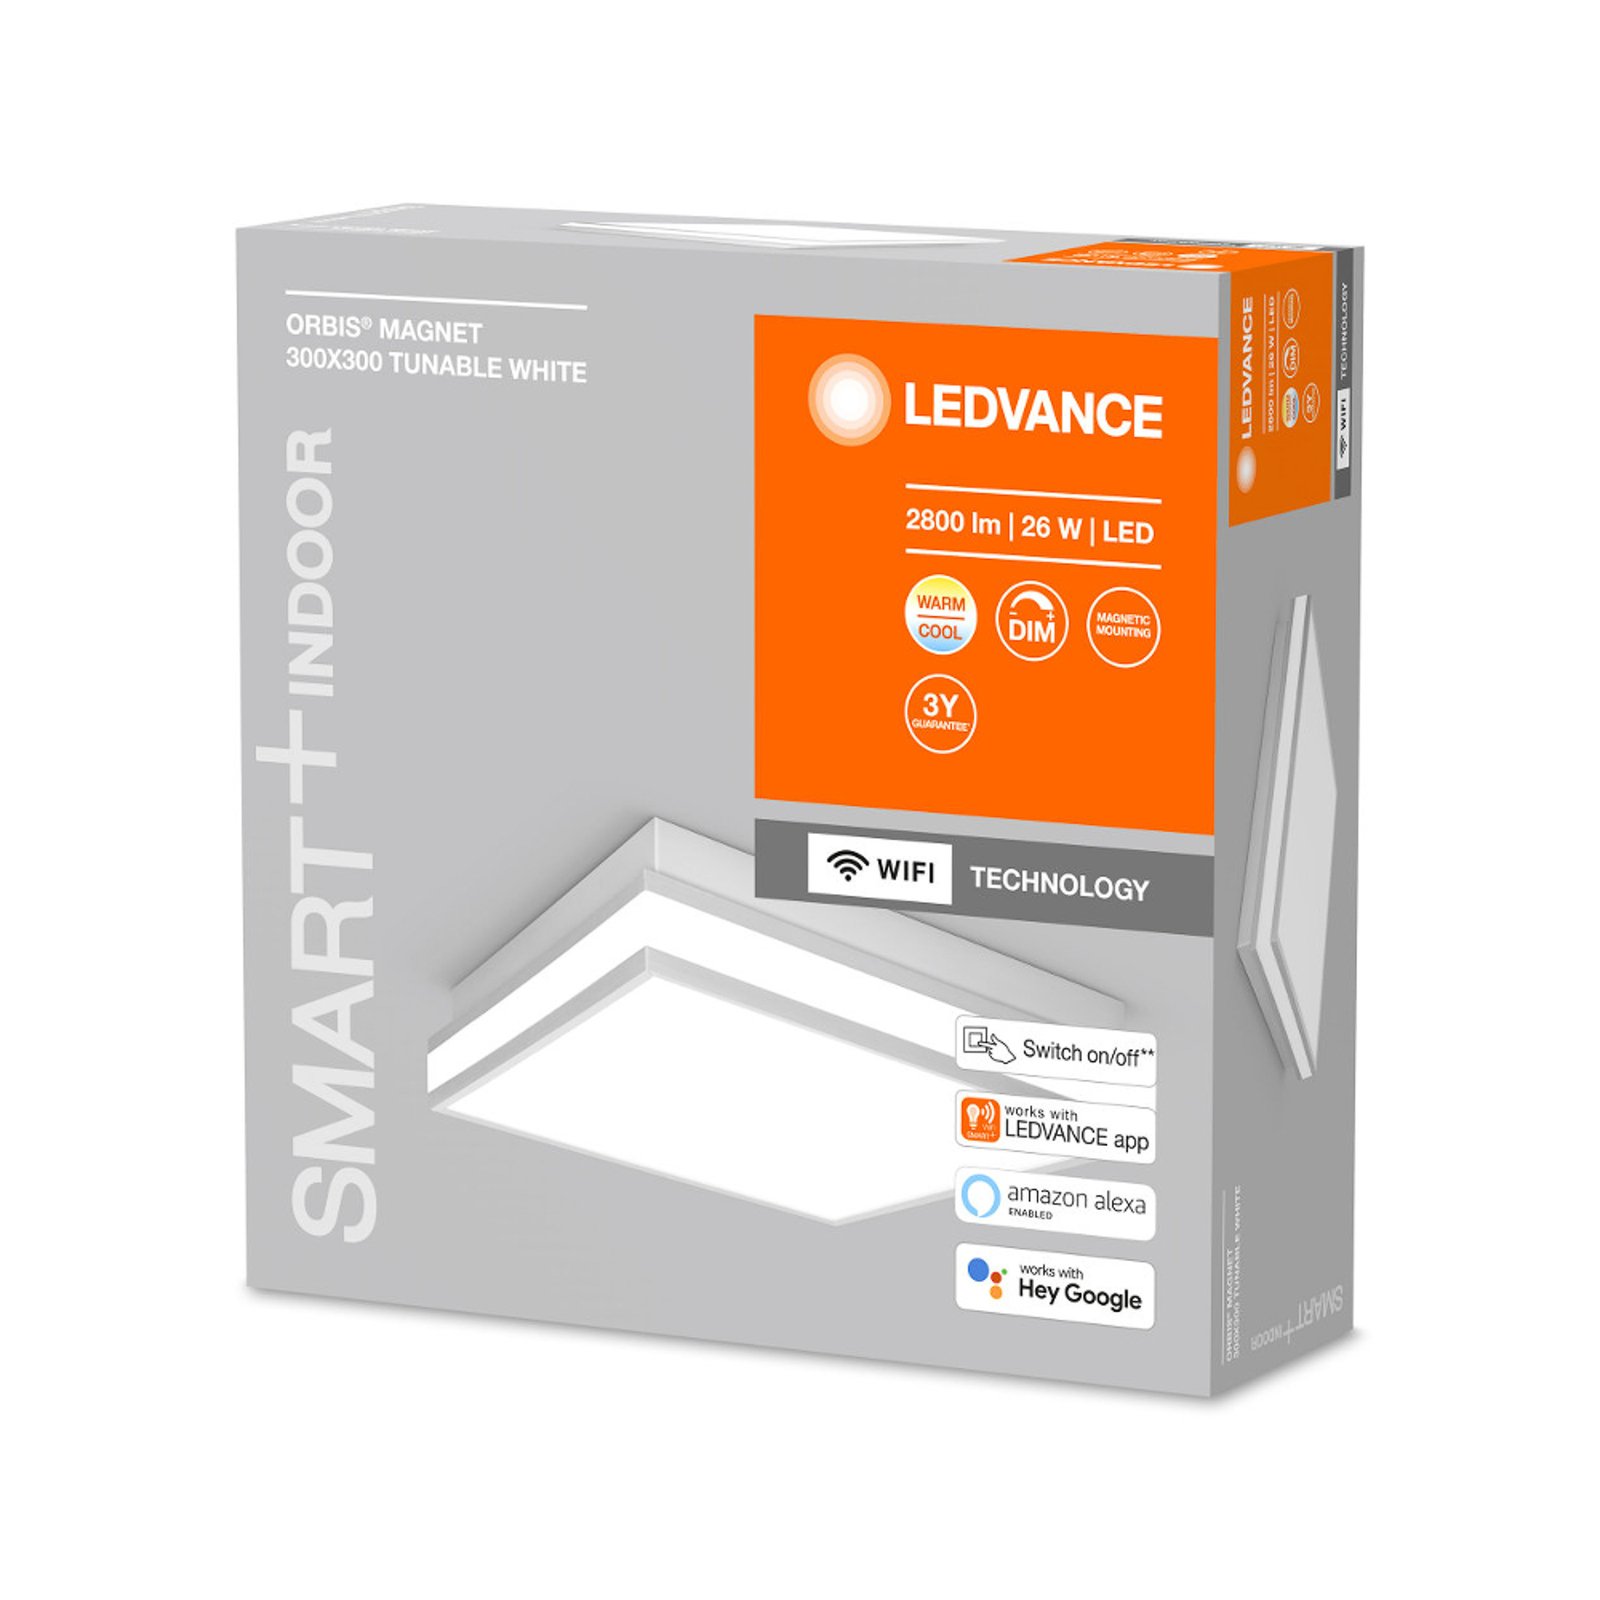 LEDVANCE SMART+ WiFi Orbis magnet grå, 30x30cm